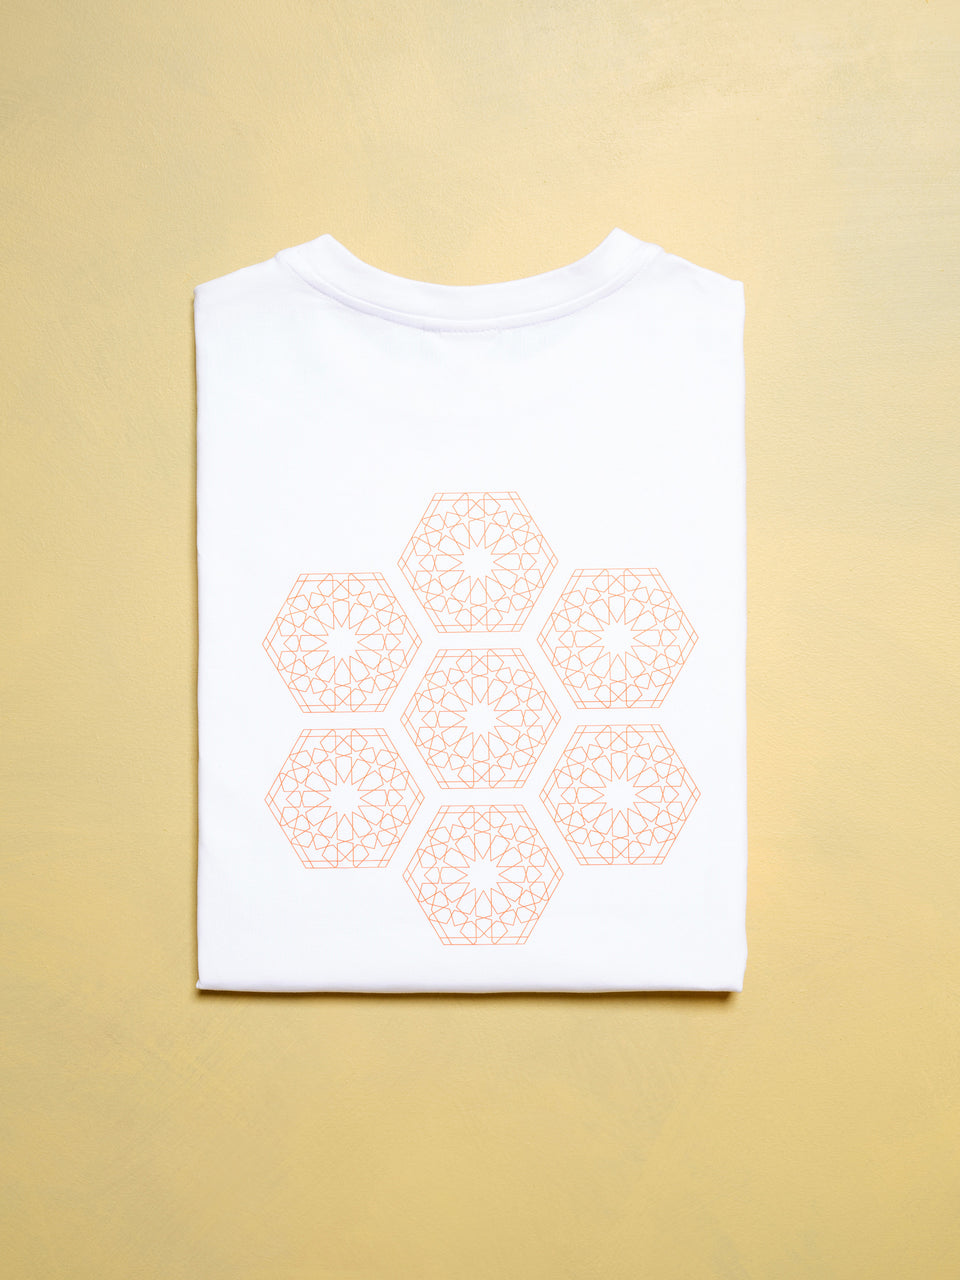 Spring Honey T-shirt - White